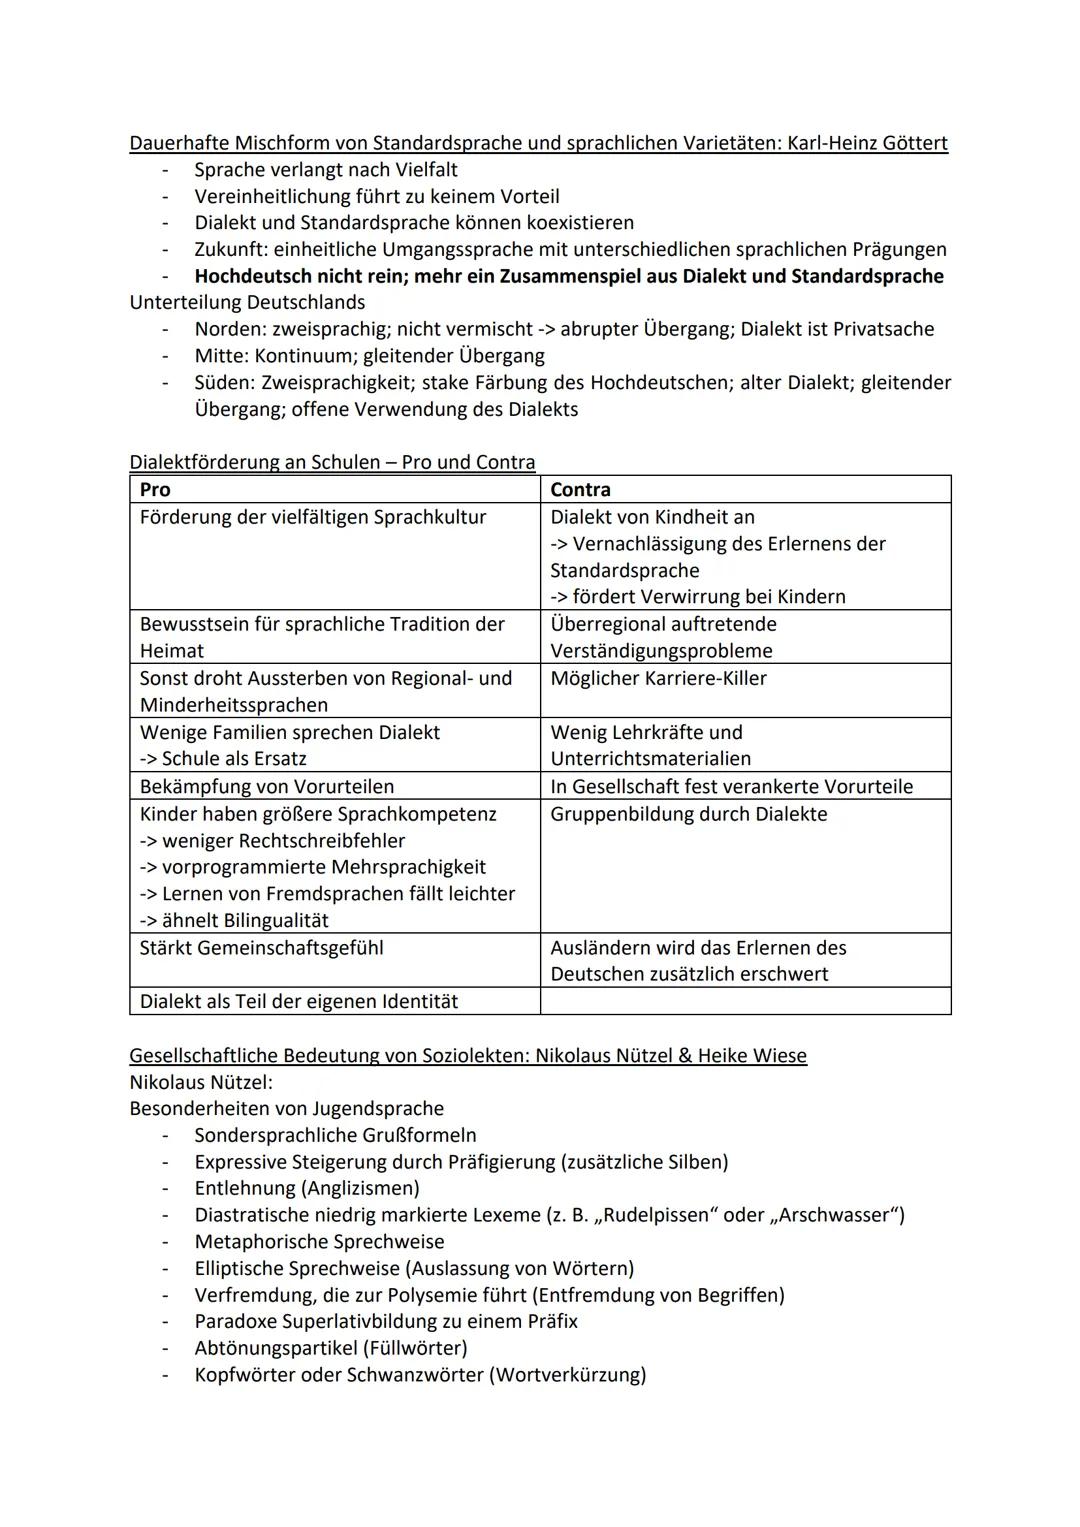 Deutschklausur
Sprachliche Varietäten
Aufbau einer Analyse:
1. Einleitungssatz (Titel, Autor, Textsorte, Entstehungsjahr, Medium)
2. Thema b